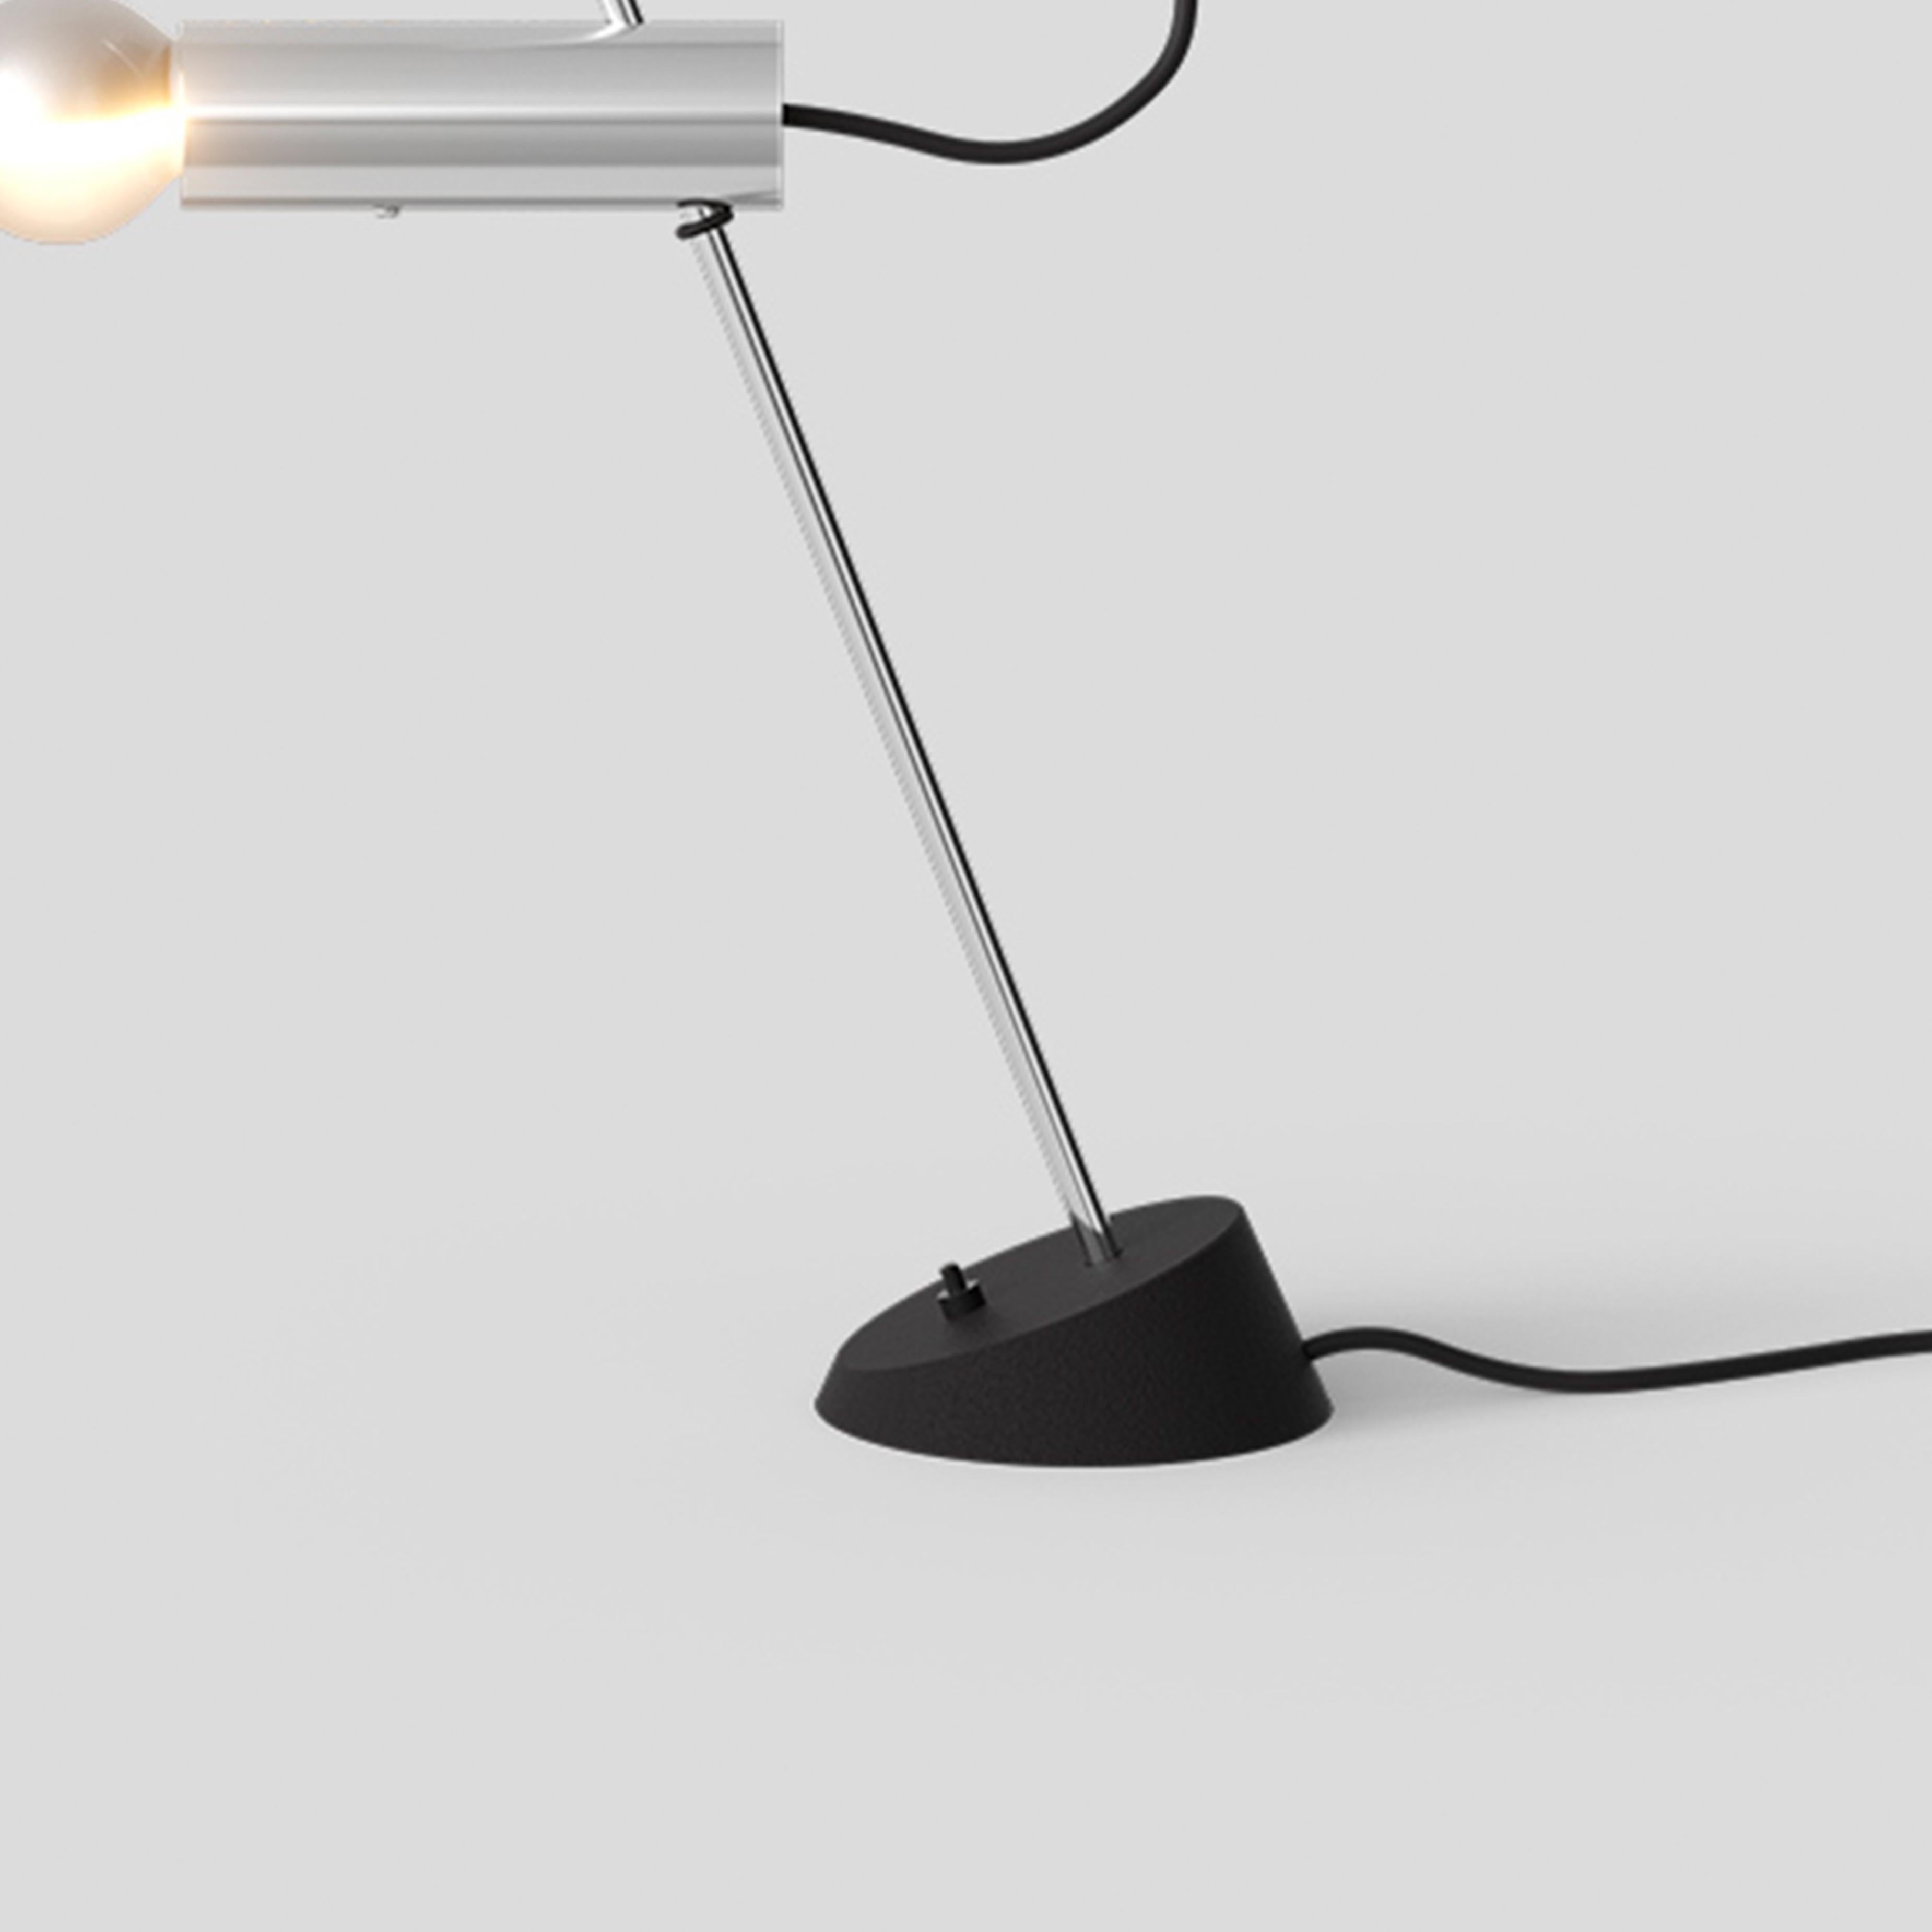 sarfatti table lamp reviews